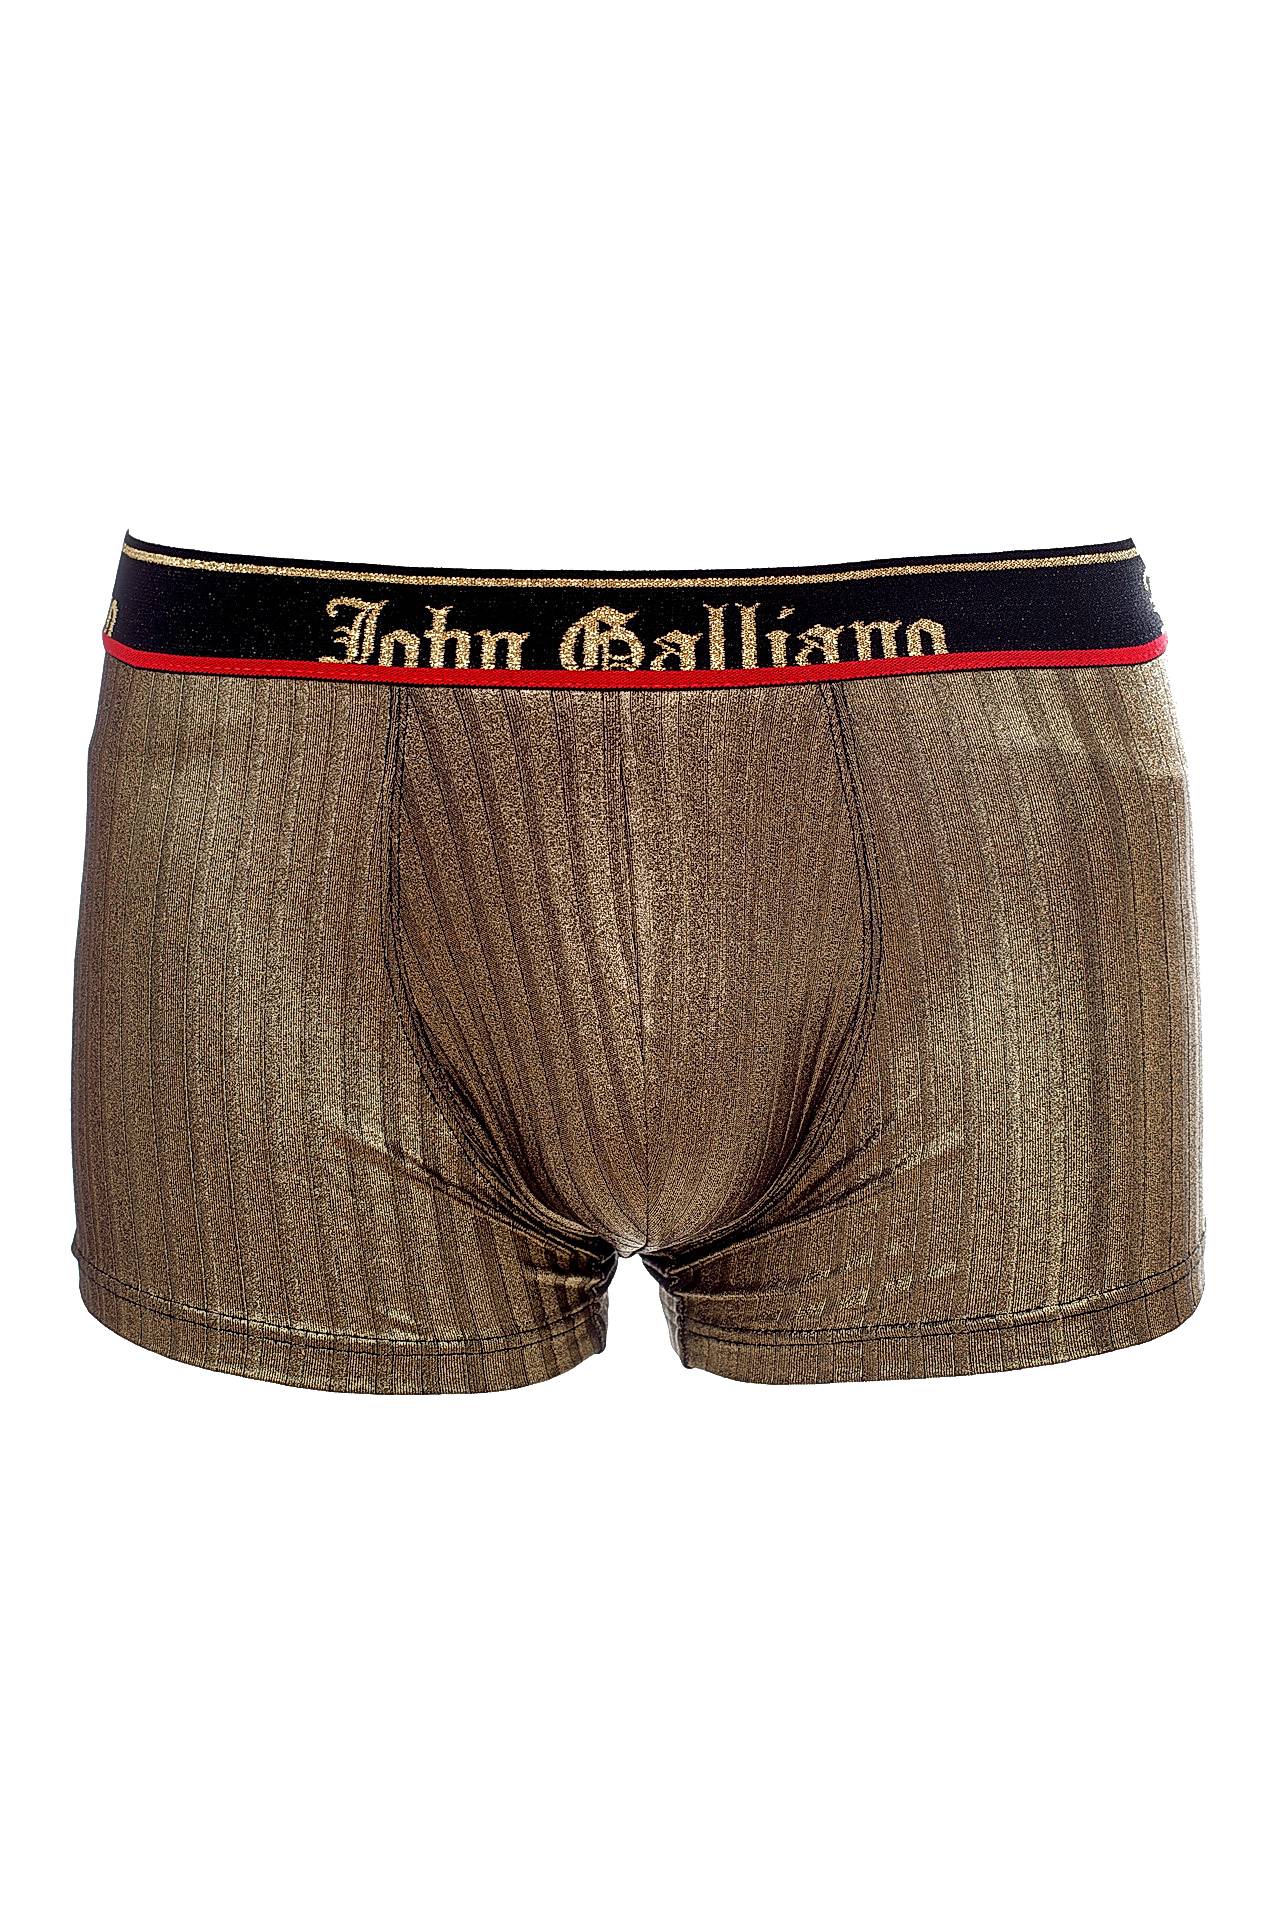 Одежда мужская Трусы JOHN GALLIANO (L13H046/19). Купить за 5160 руб.